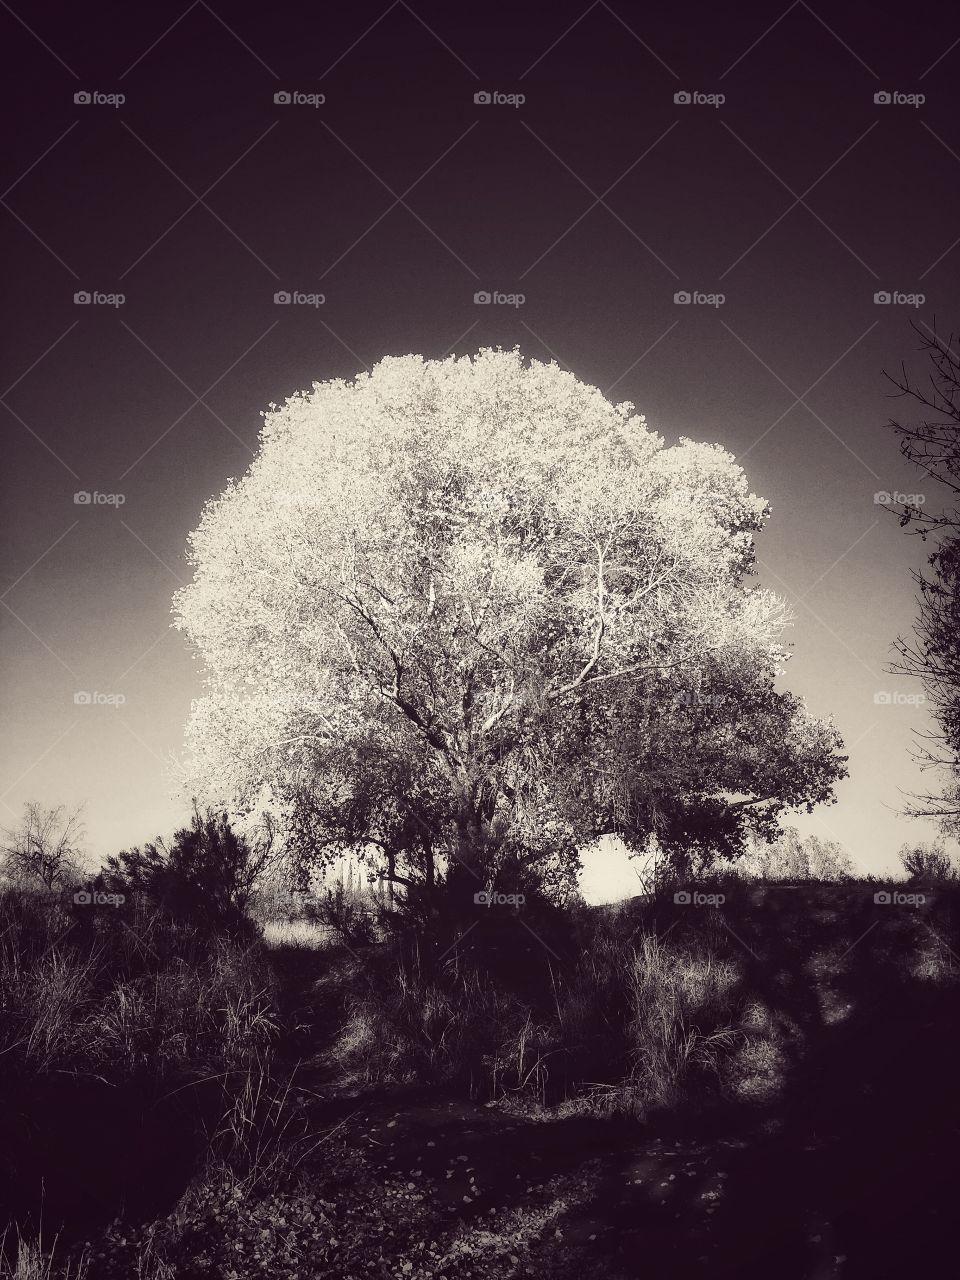 Autumn Tree 2018 (monochrome)